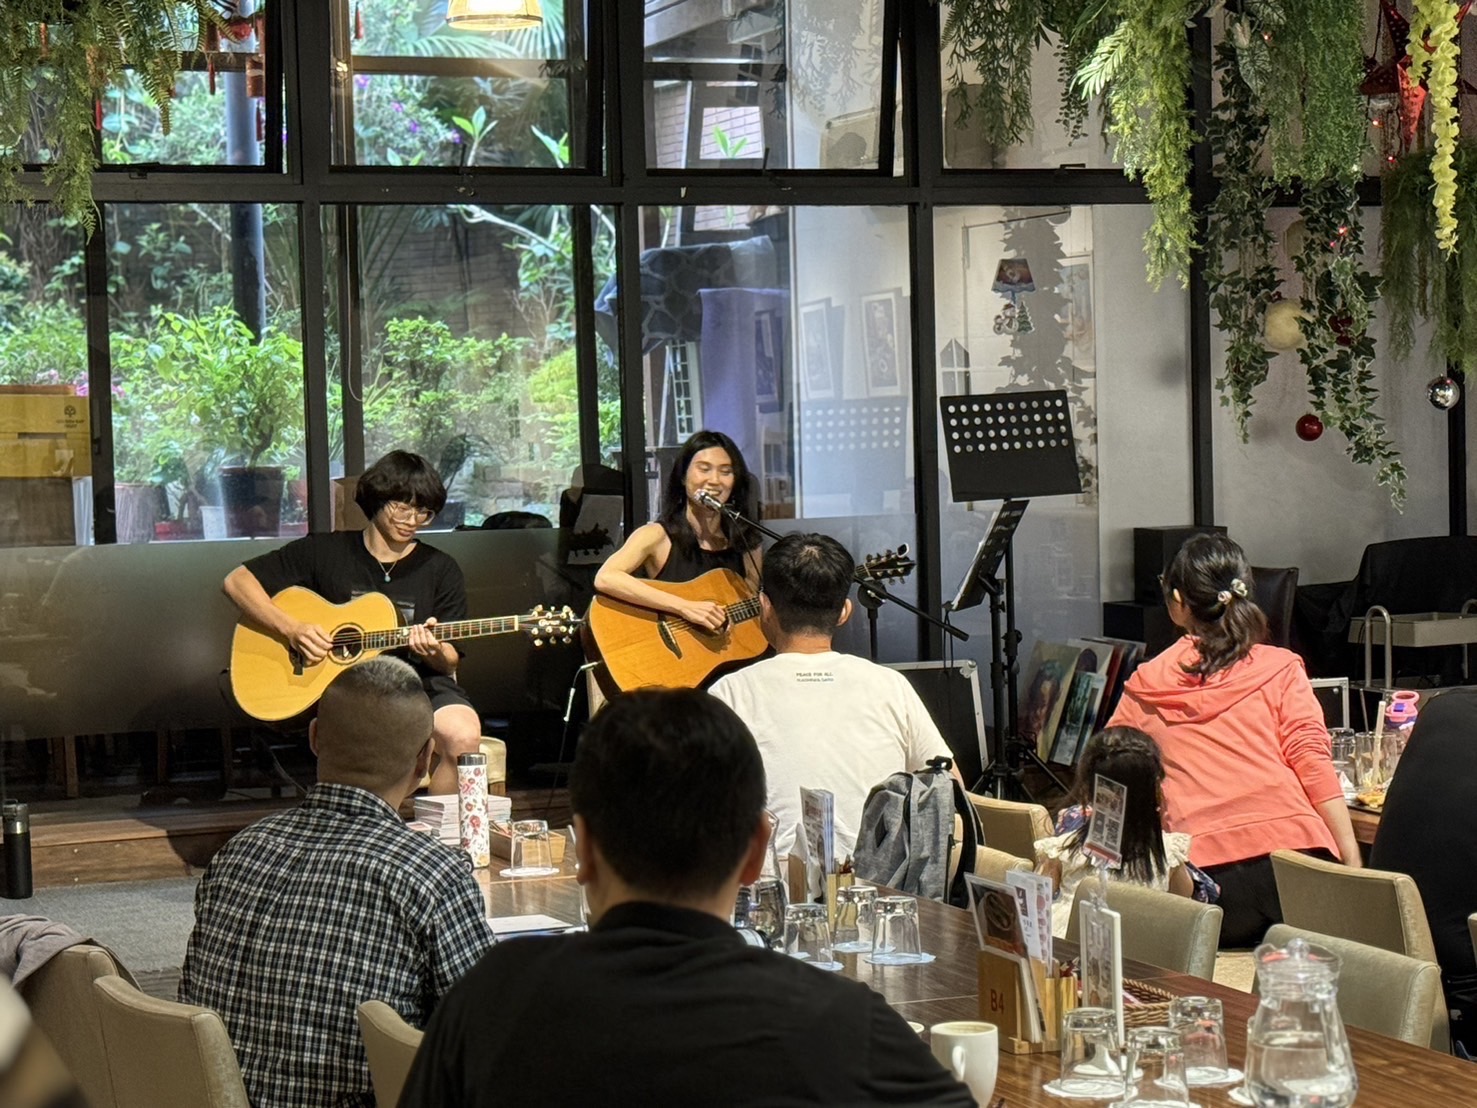 小型音樂會，用餐者享受美食和音樂。(圖/李容珍攝影)